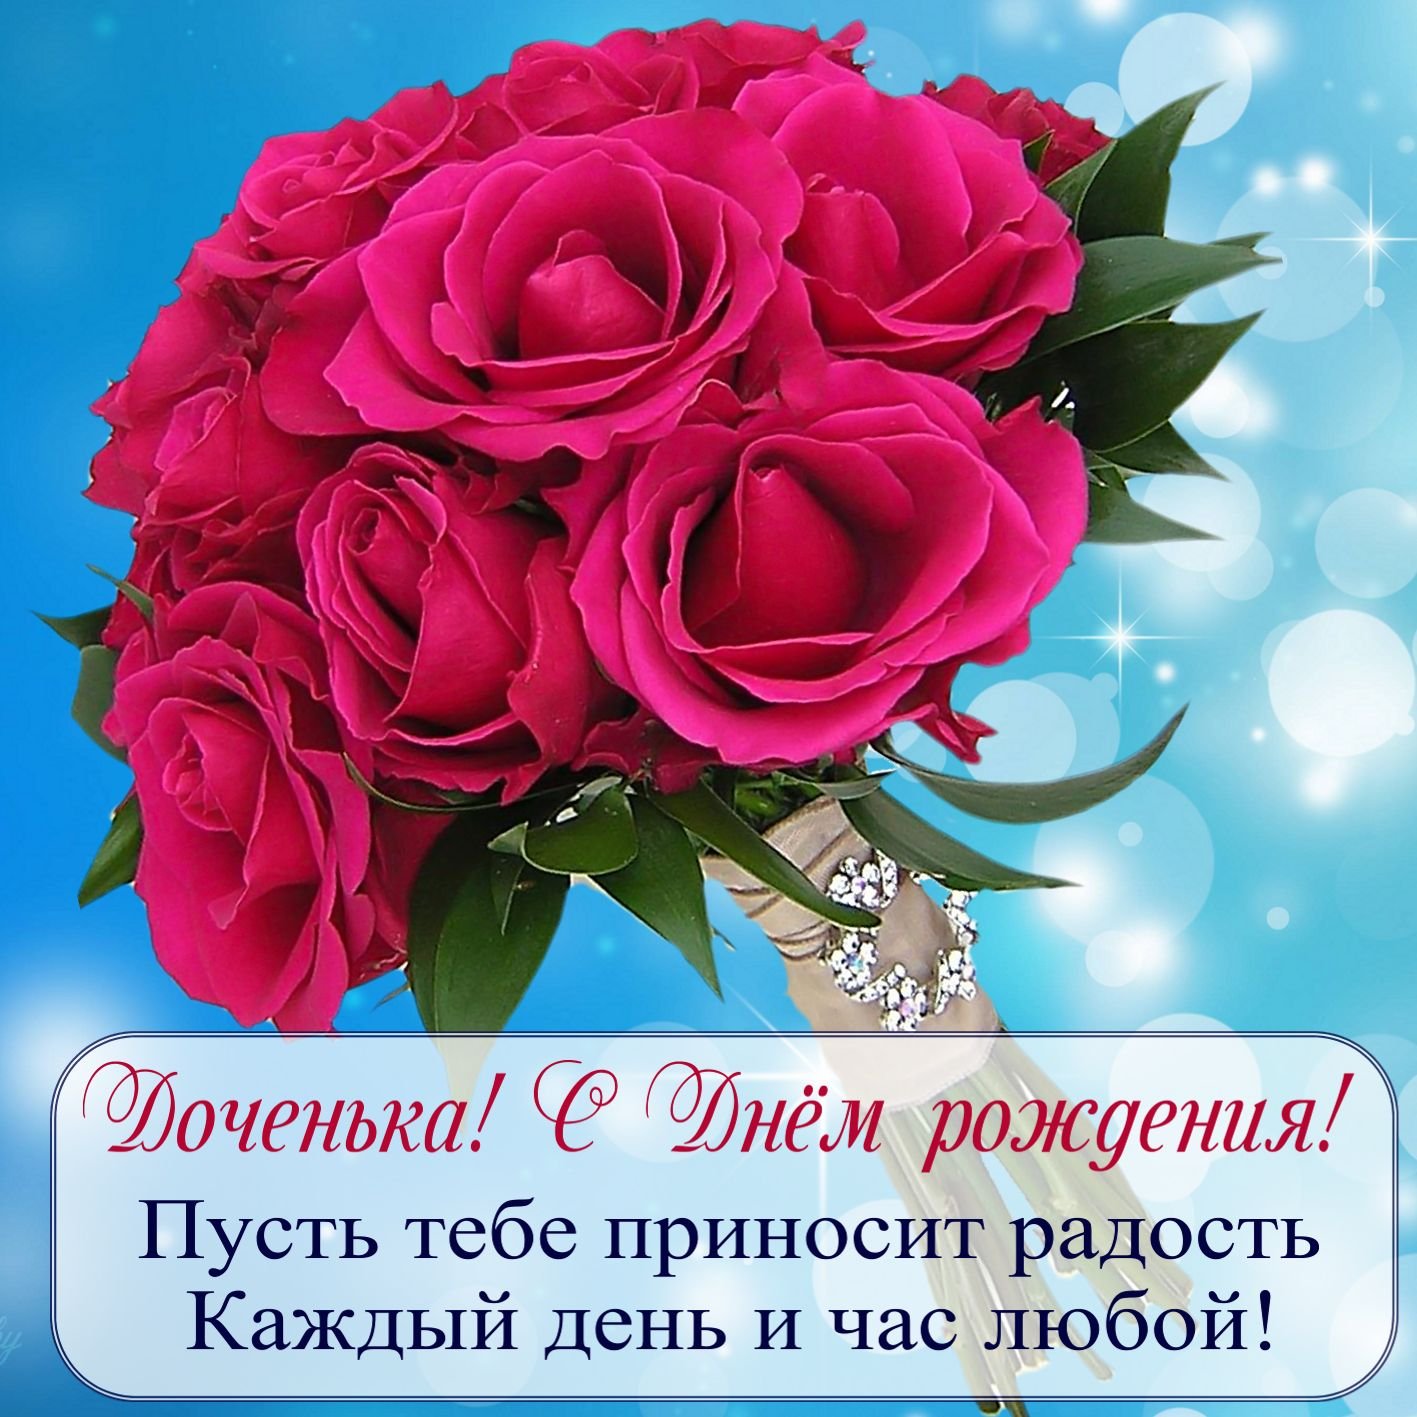 День дочери - поздравления в открытках, стихах и прозе, фото | РБК Украина